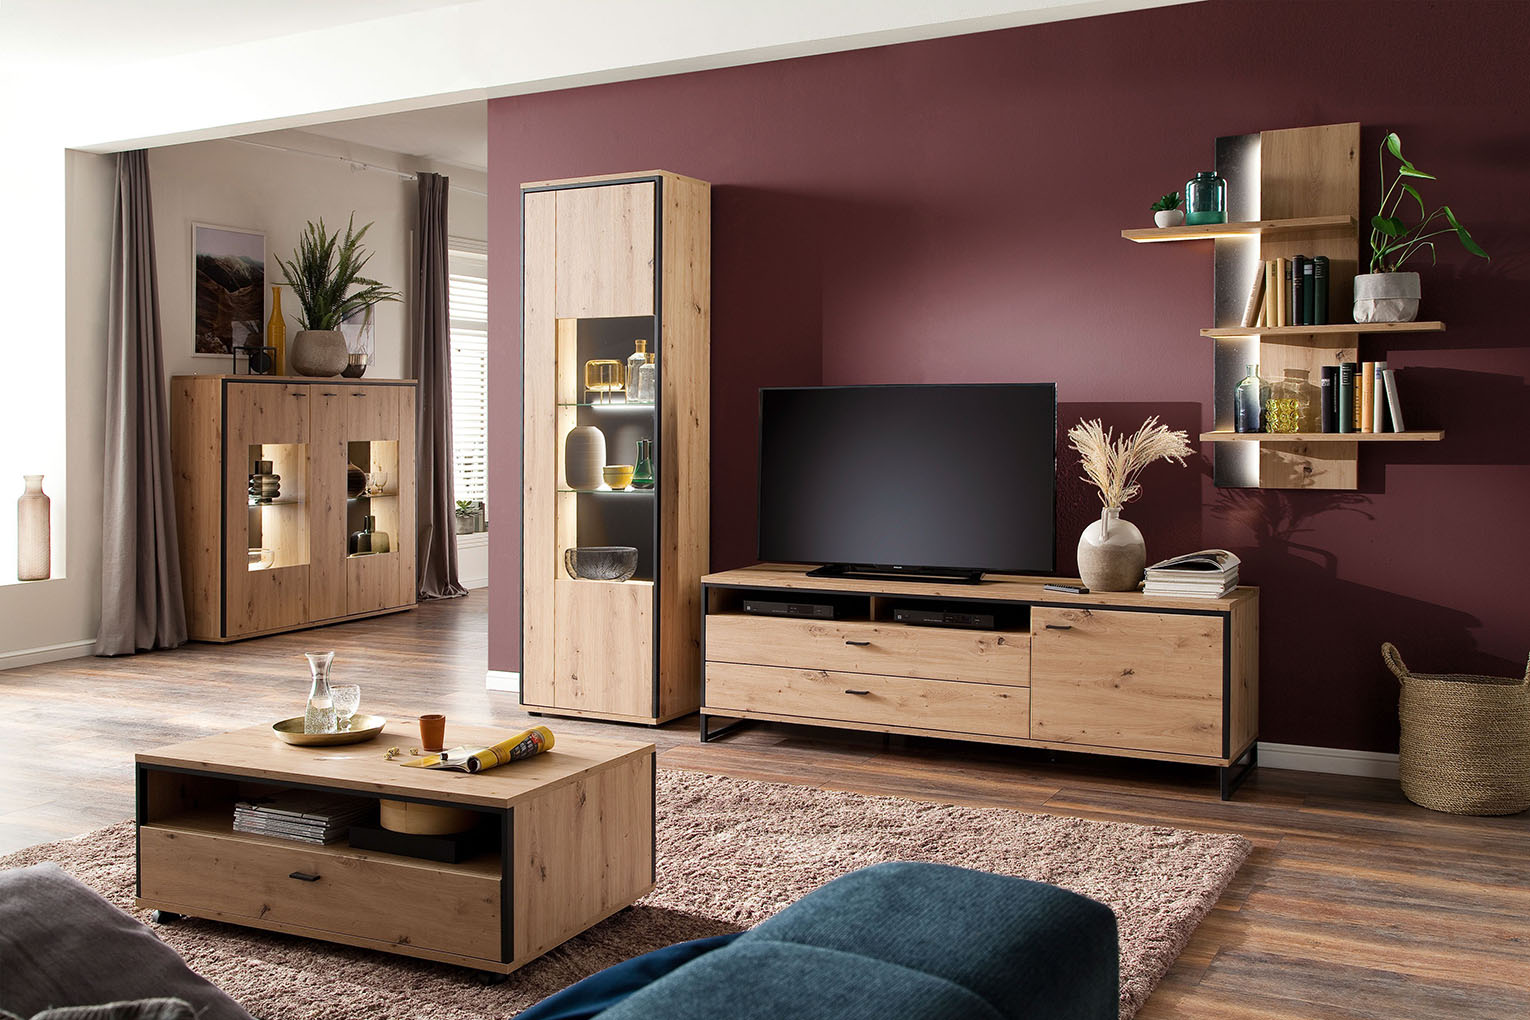 10 of Best Living Room Furniture Sets for 2020